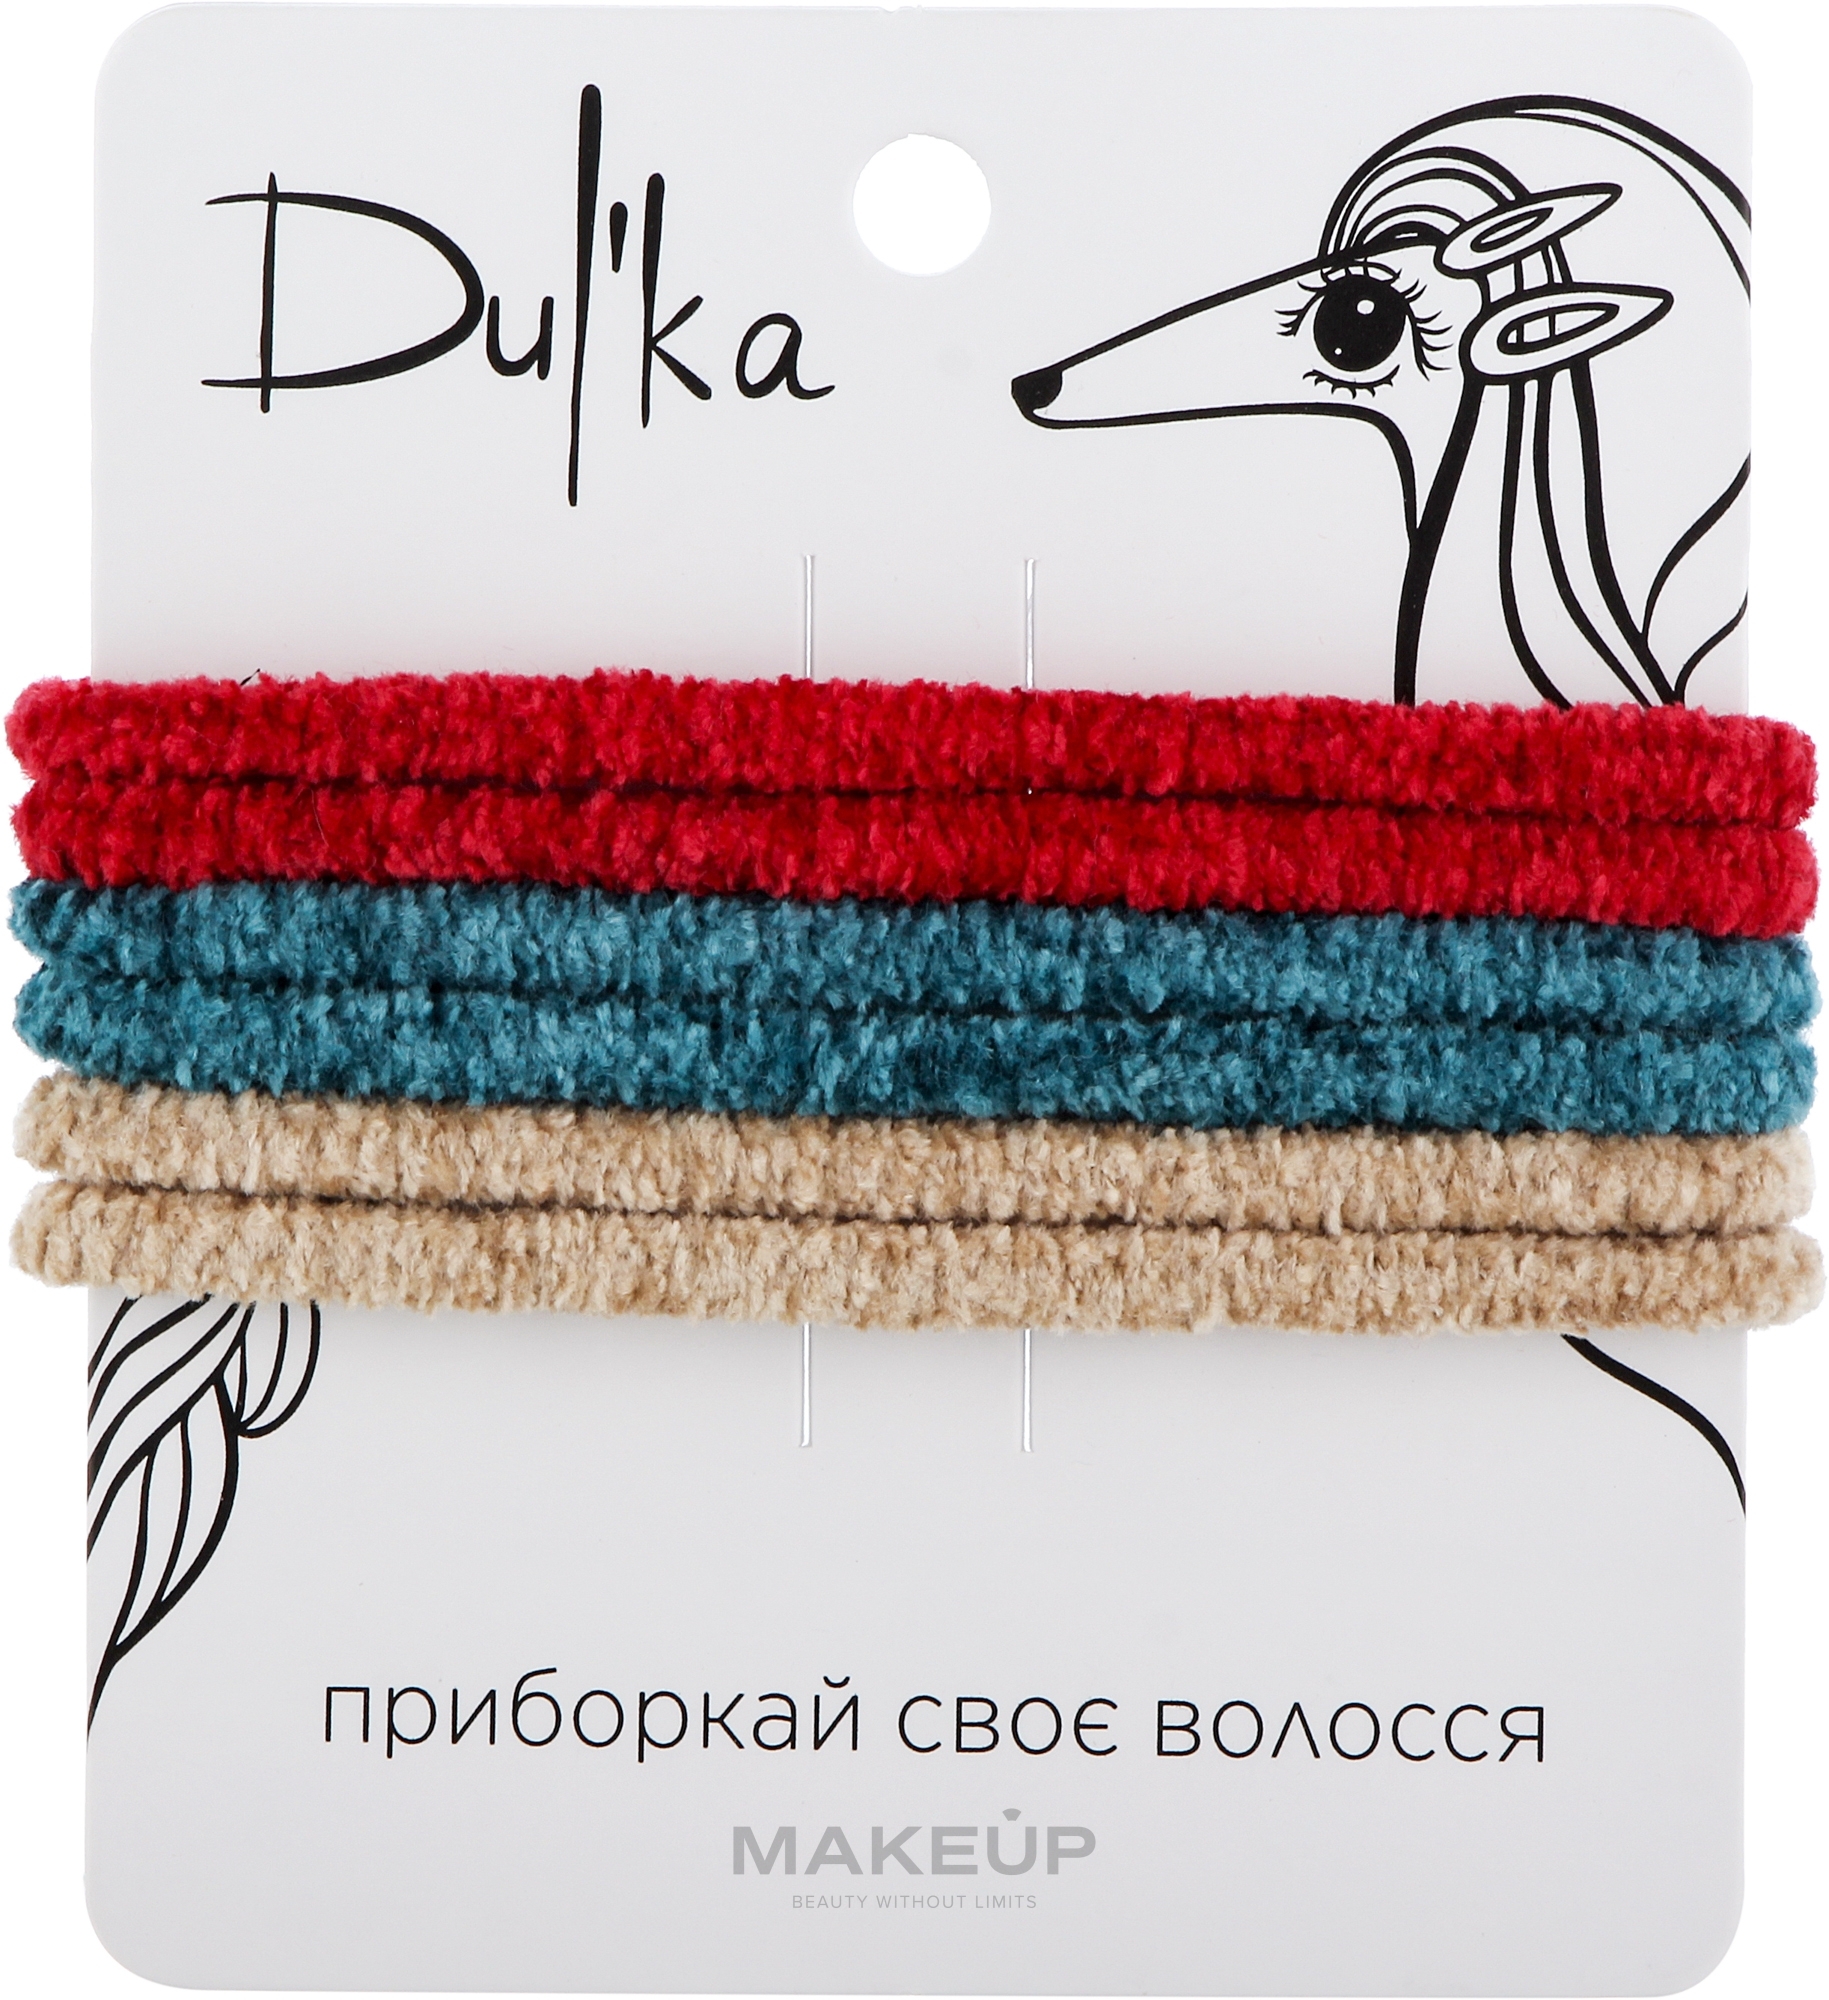 Набор разноцветных резинок для волос UH717739, 6 шт - Dulka  — фото 6шт